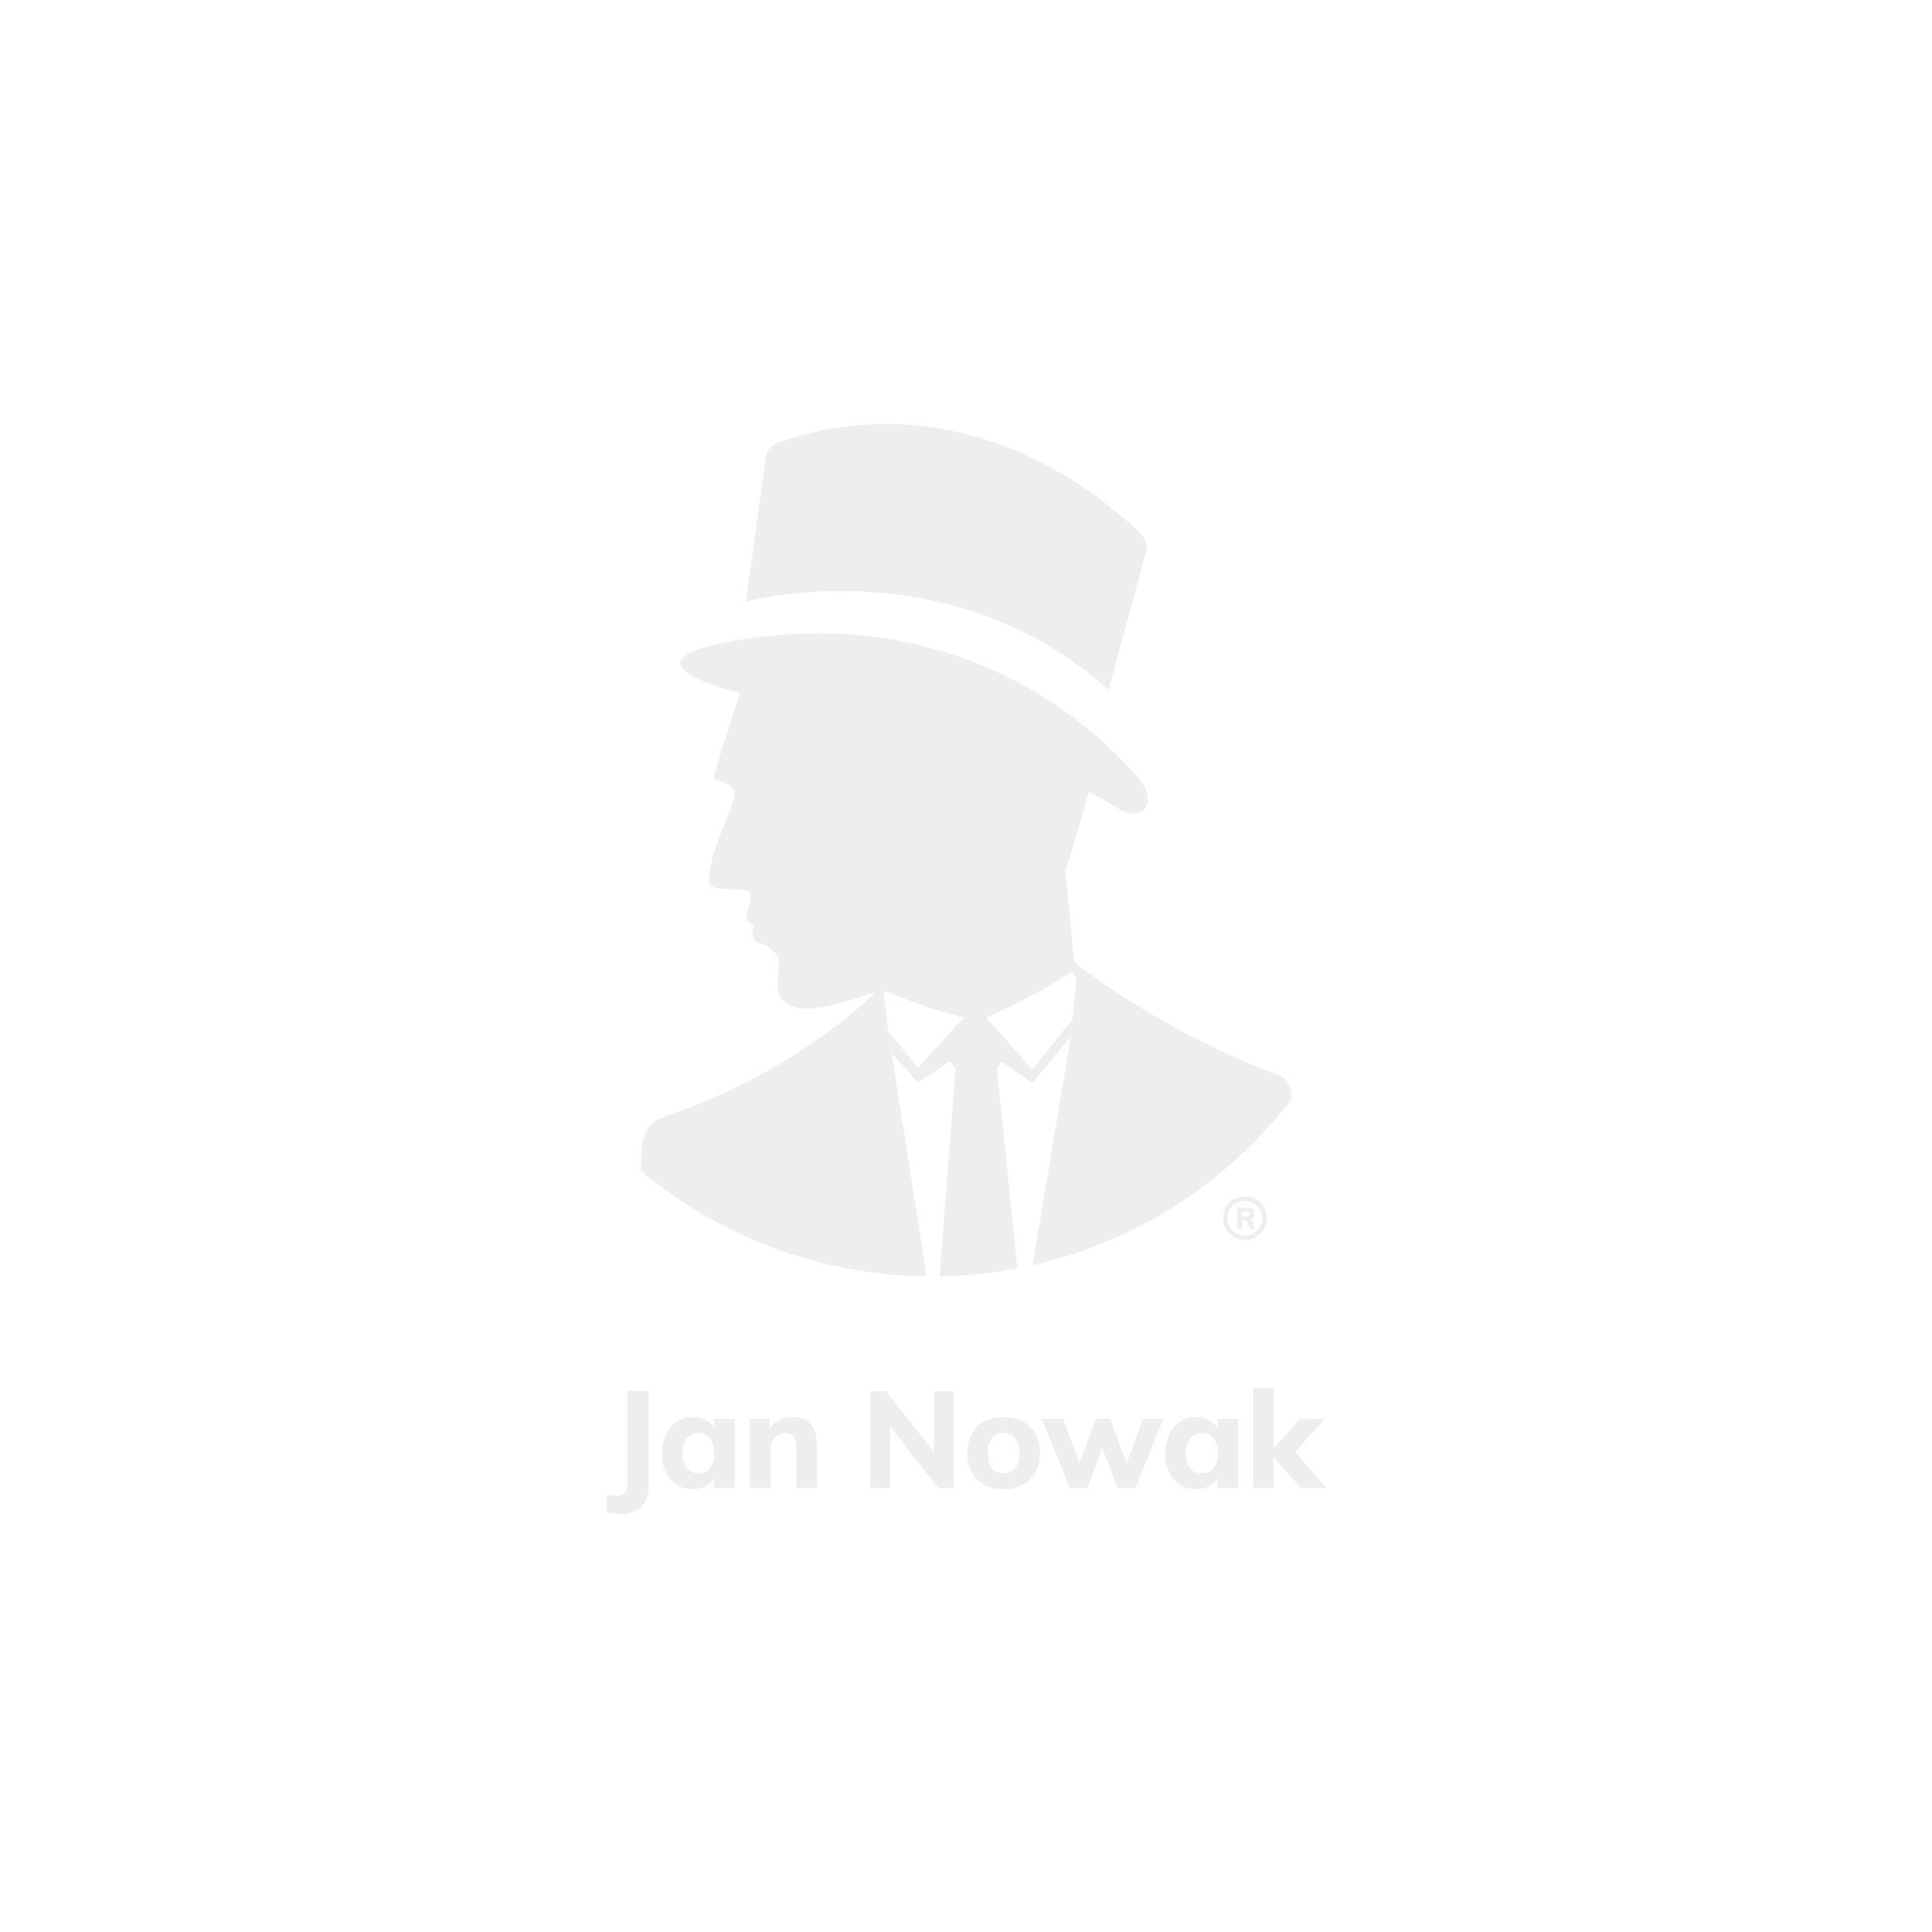 JAN NOWAK Kovová kartotéka model SARA V3 460x1020x620, šedo-modrá, 3 zásuvky